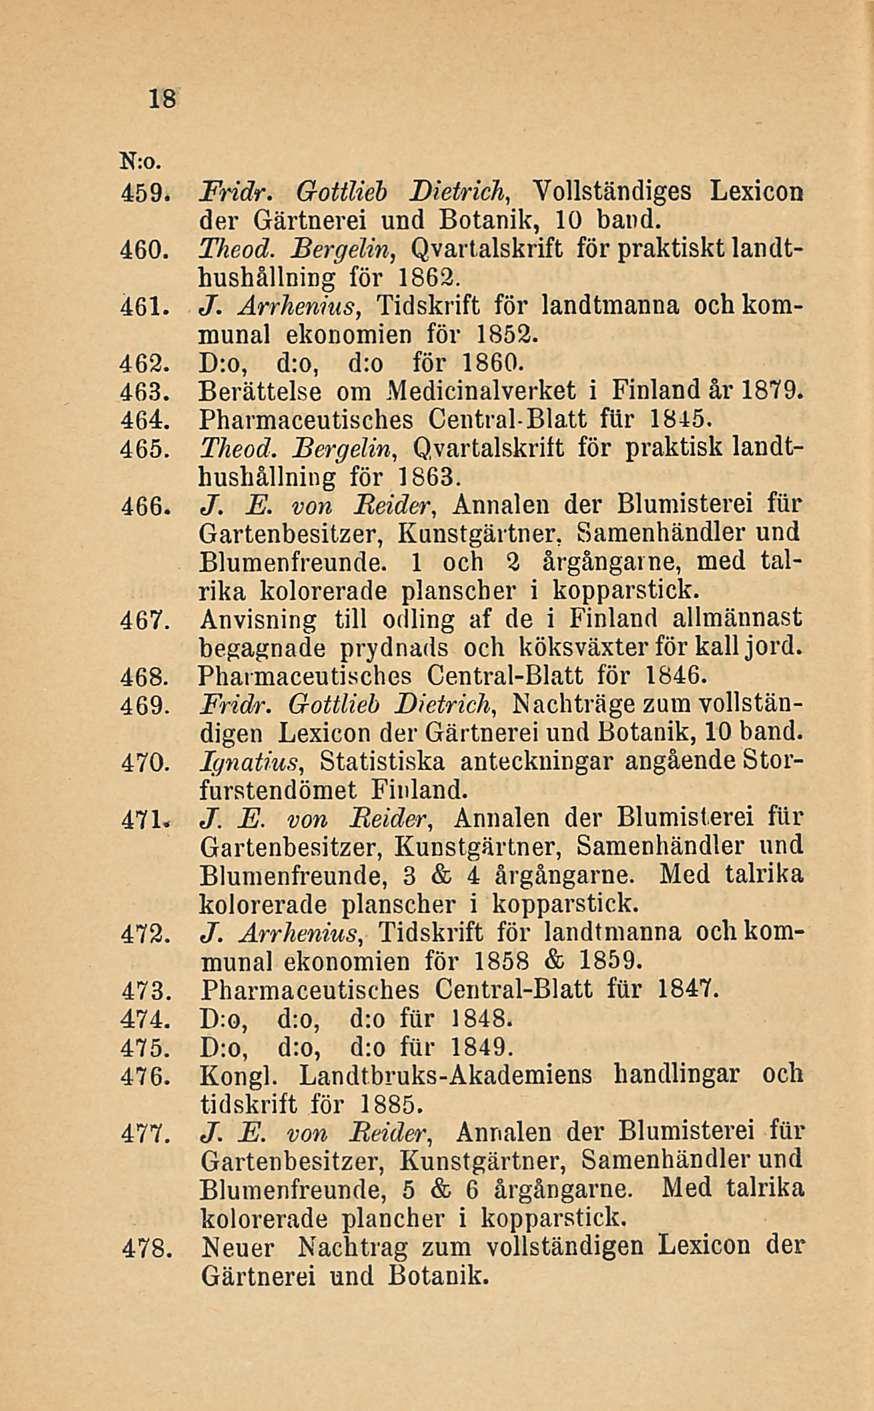 18 N:0. 459. Fridr. Gottlieb Dietrich, Yollständiges Lexicon der Gärtnerei und Botanik, 10 band. 460. Theod. Bergelin, Qvartalskrift för praktiskt landthushållning för 1863. 461. J.